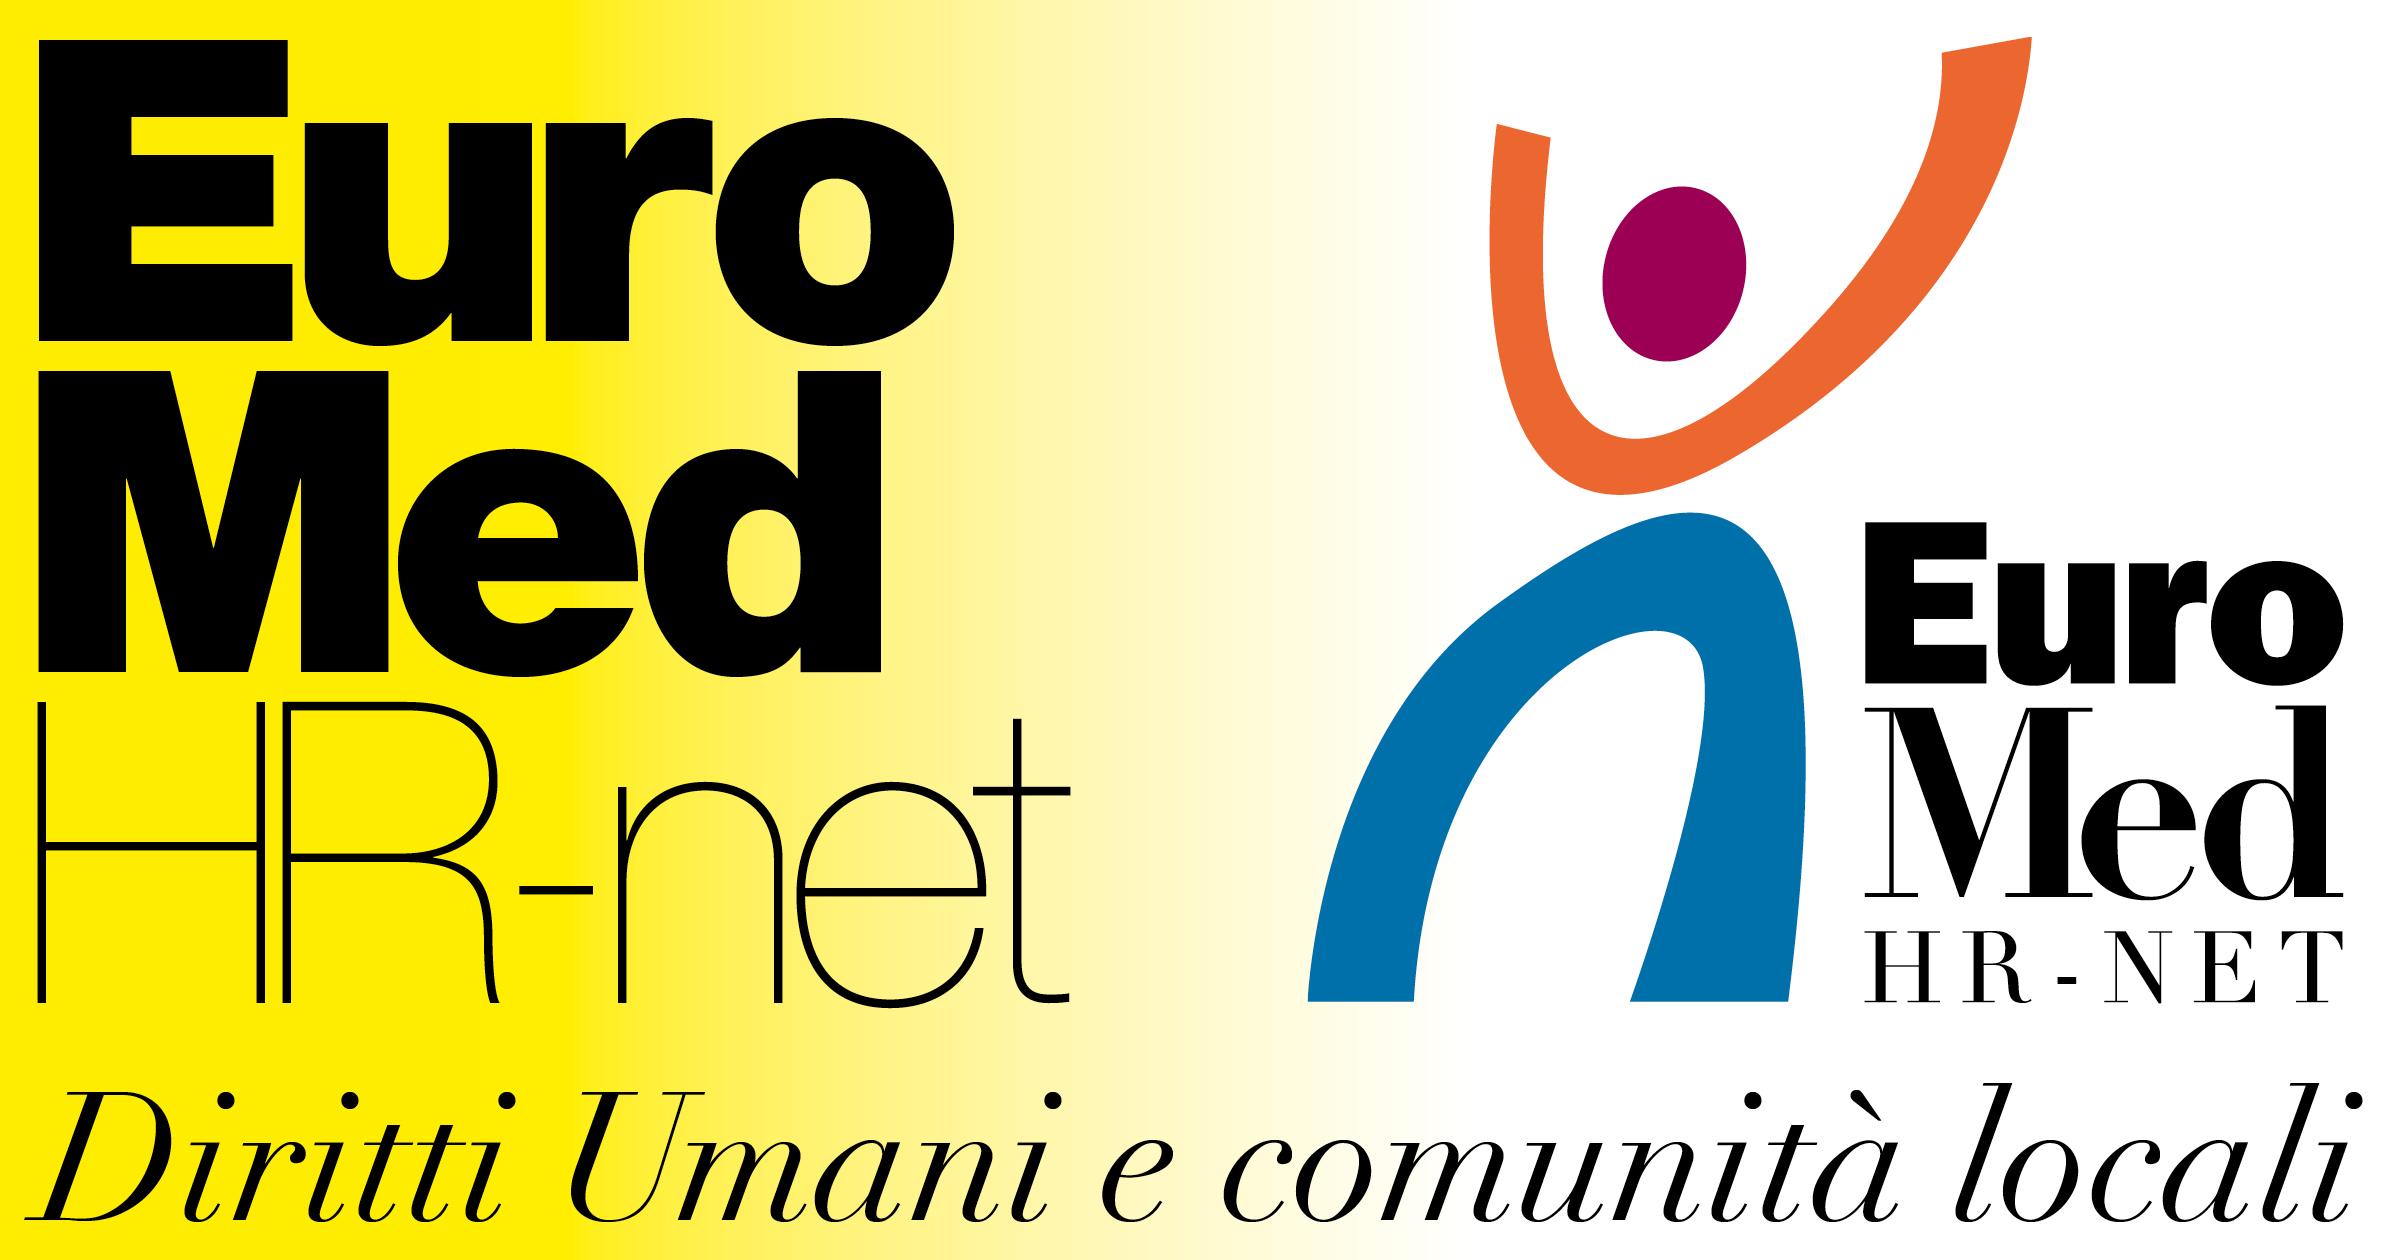 EuroMed HR-net: una rete per i Diritti Umani